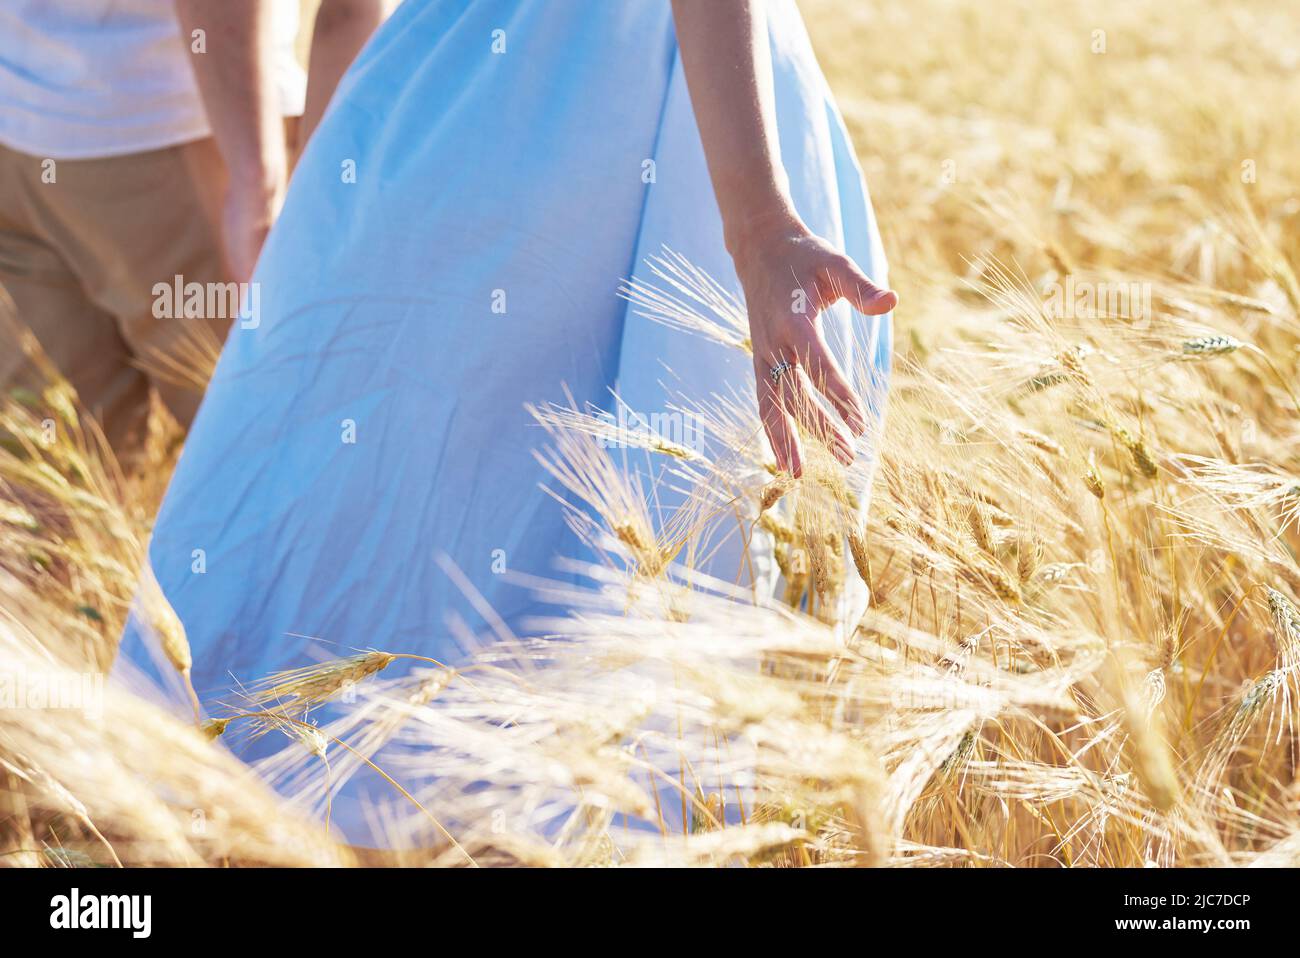 Un couple amoureux marche à travers un champ de blé. Gros plan de la main de la fille touchant le blé Banque D'Images